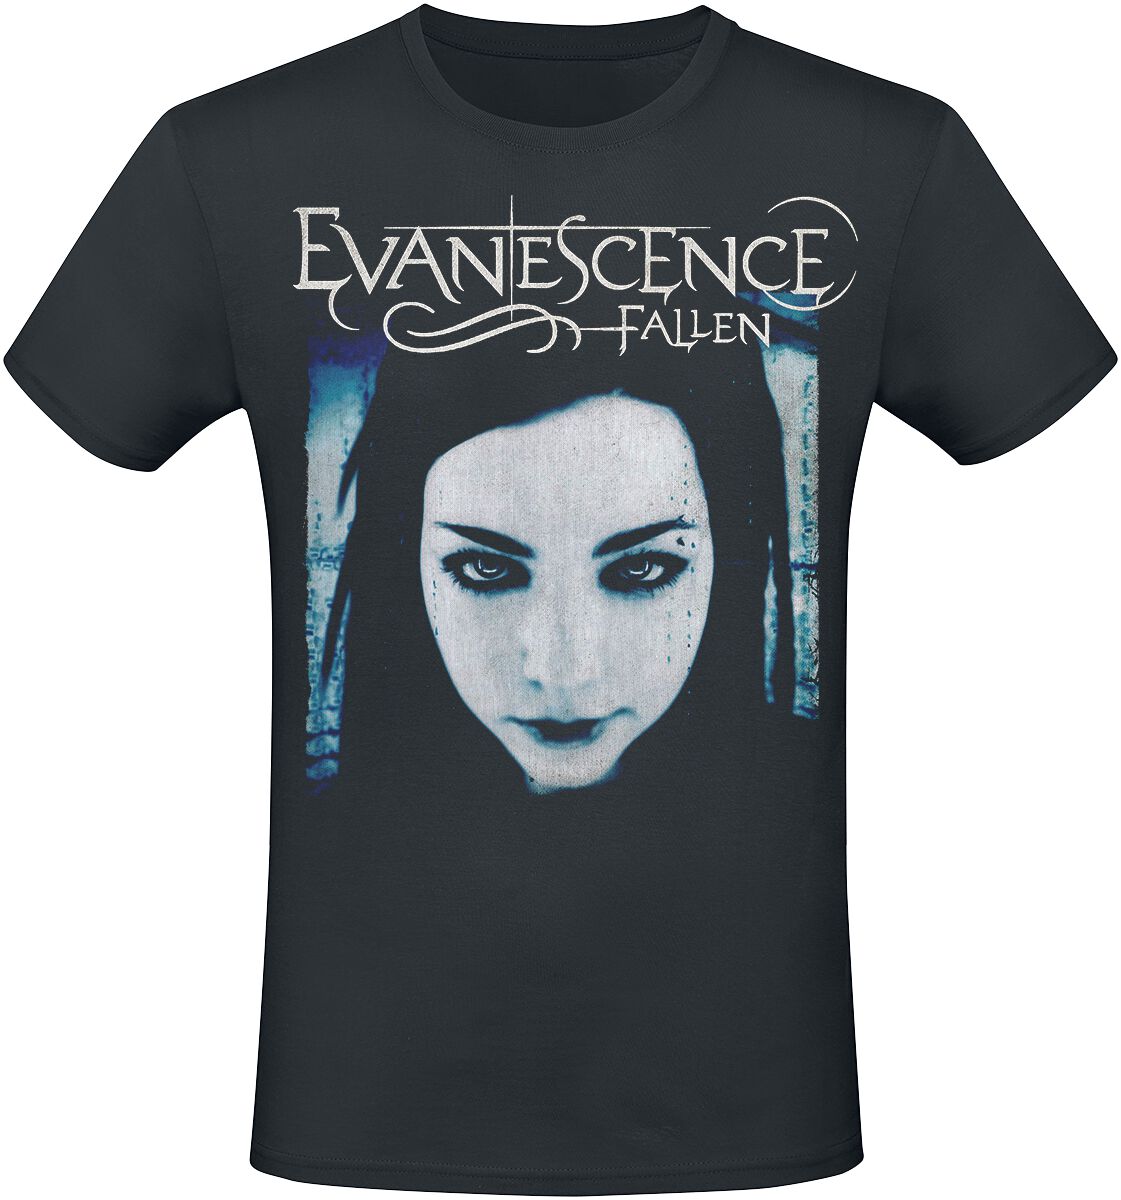 Evanescence T-Shirt - Fallen - S bis XXL - für Männer - Größe XXL - schwarz  - Lizenziertes Merchandise!